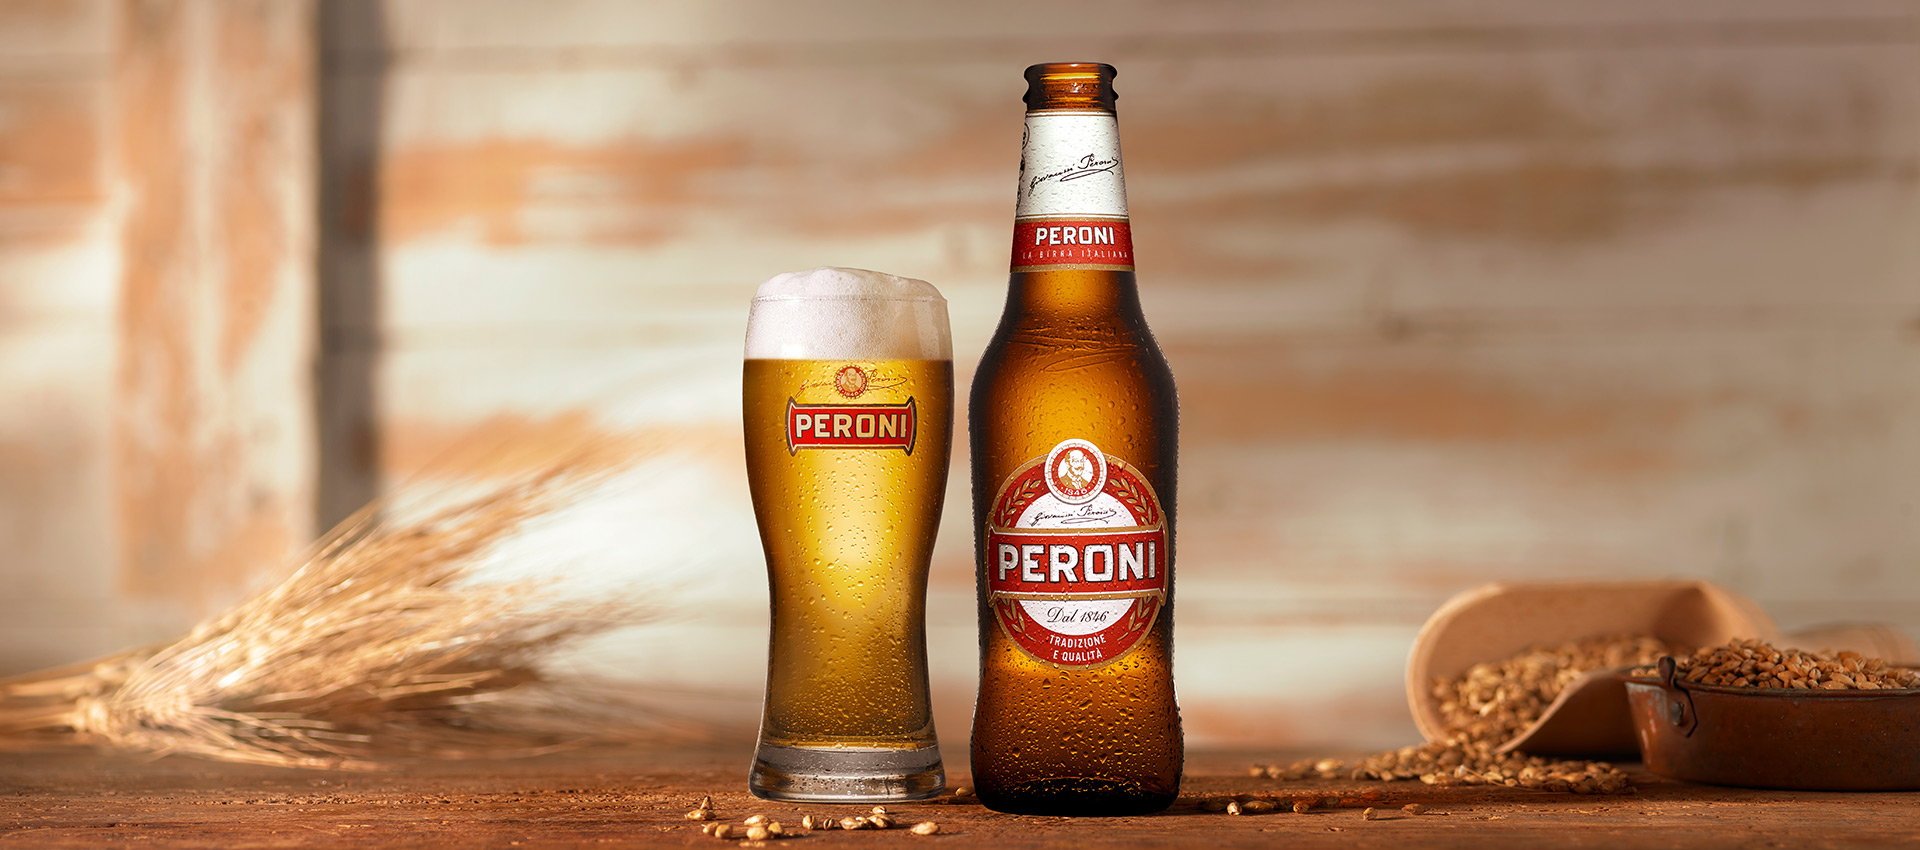 Peroni-Bier